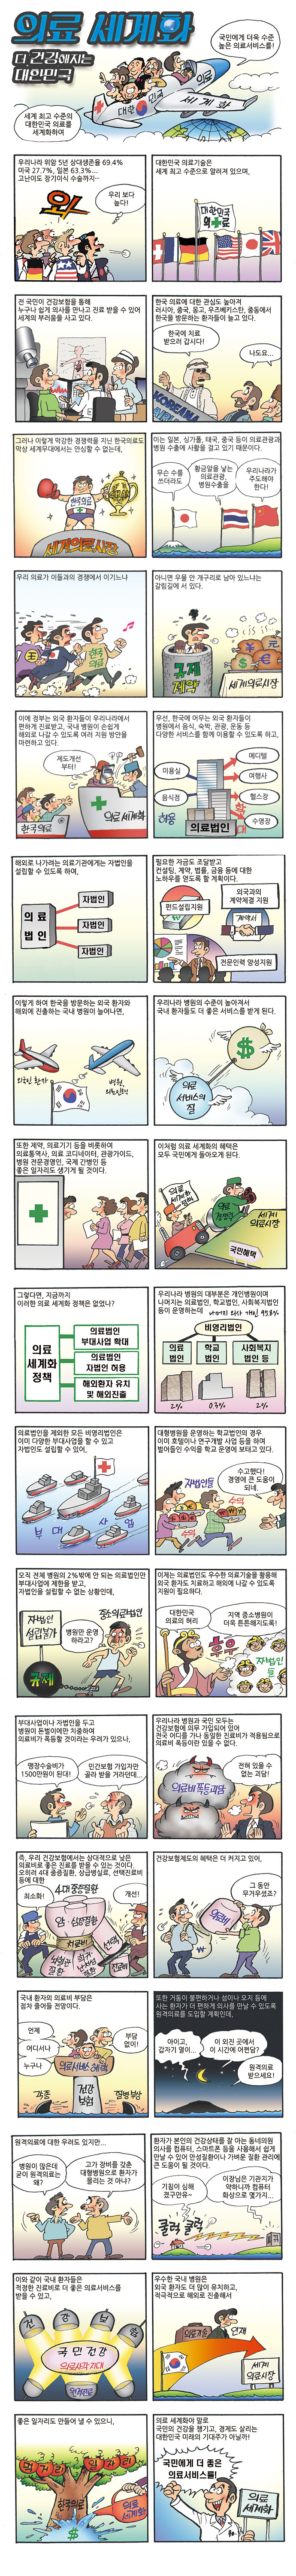 의료 세계화 더 건강해지는 대한민국